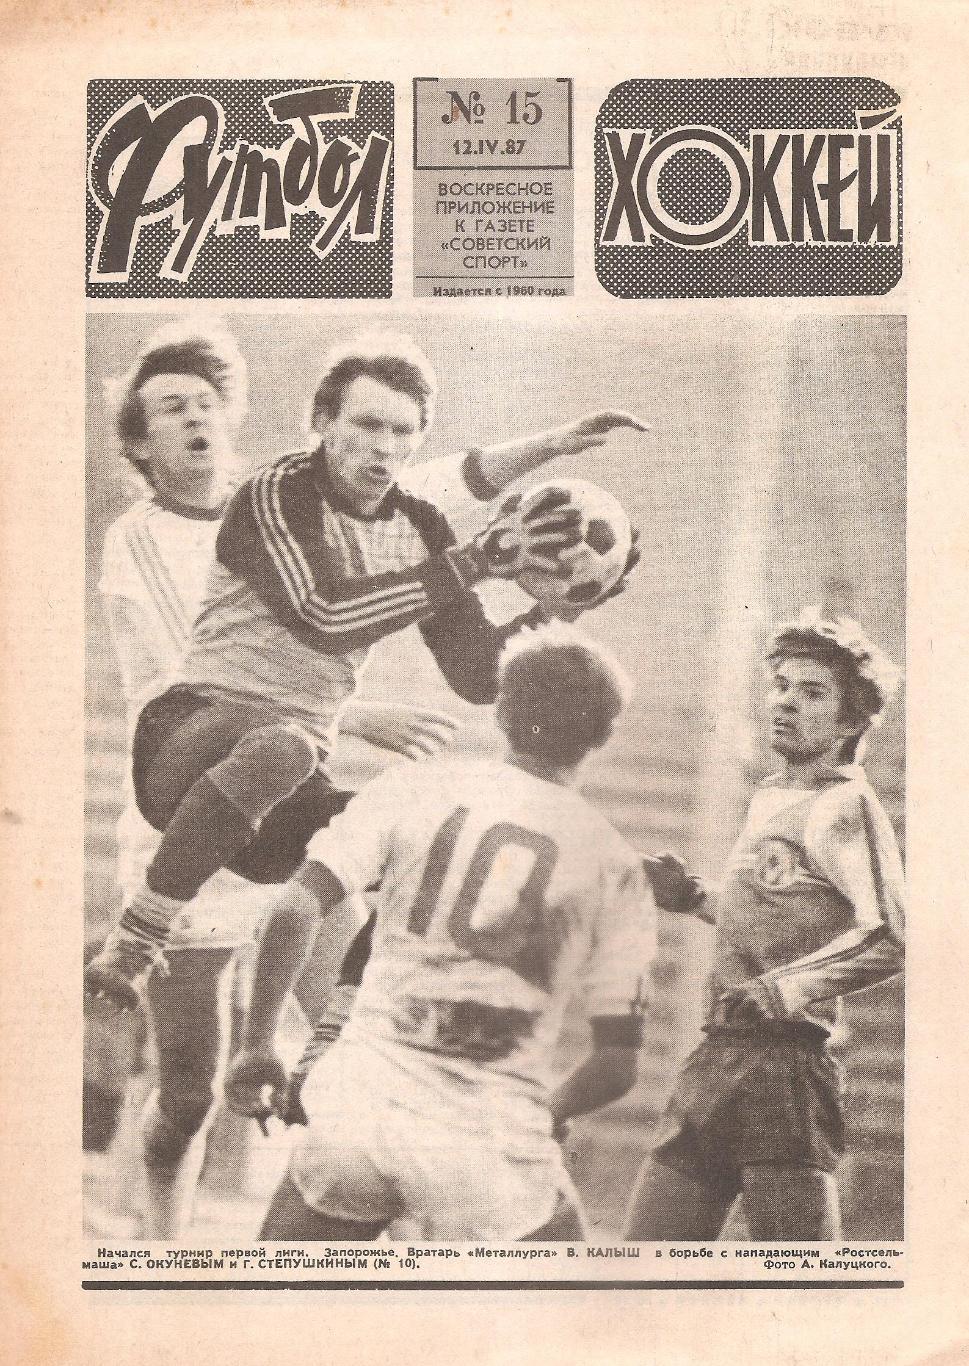 Футбол-Хоккей № 15. 12.04.1987 г.